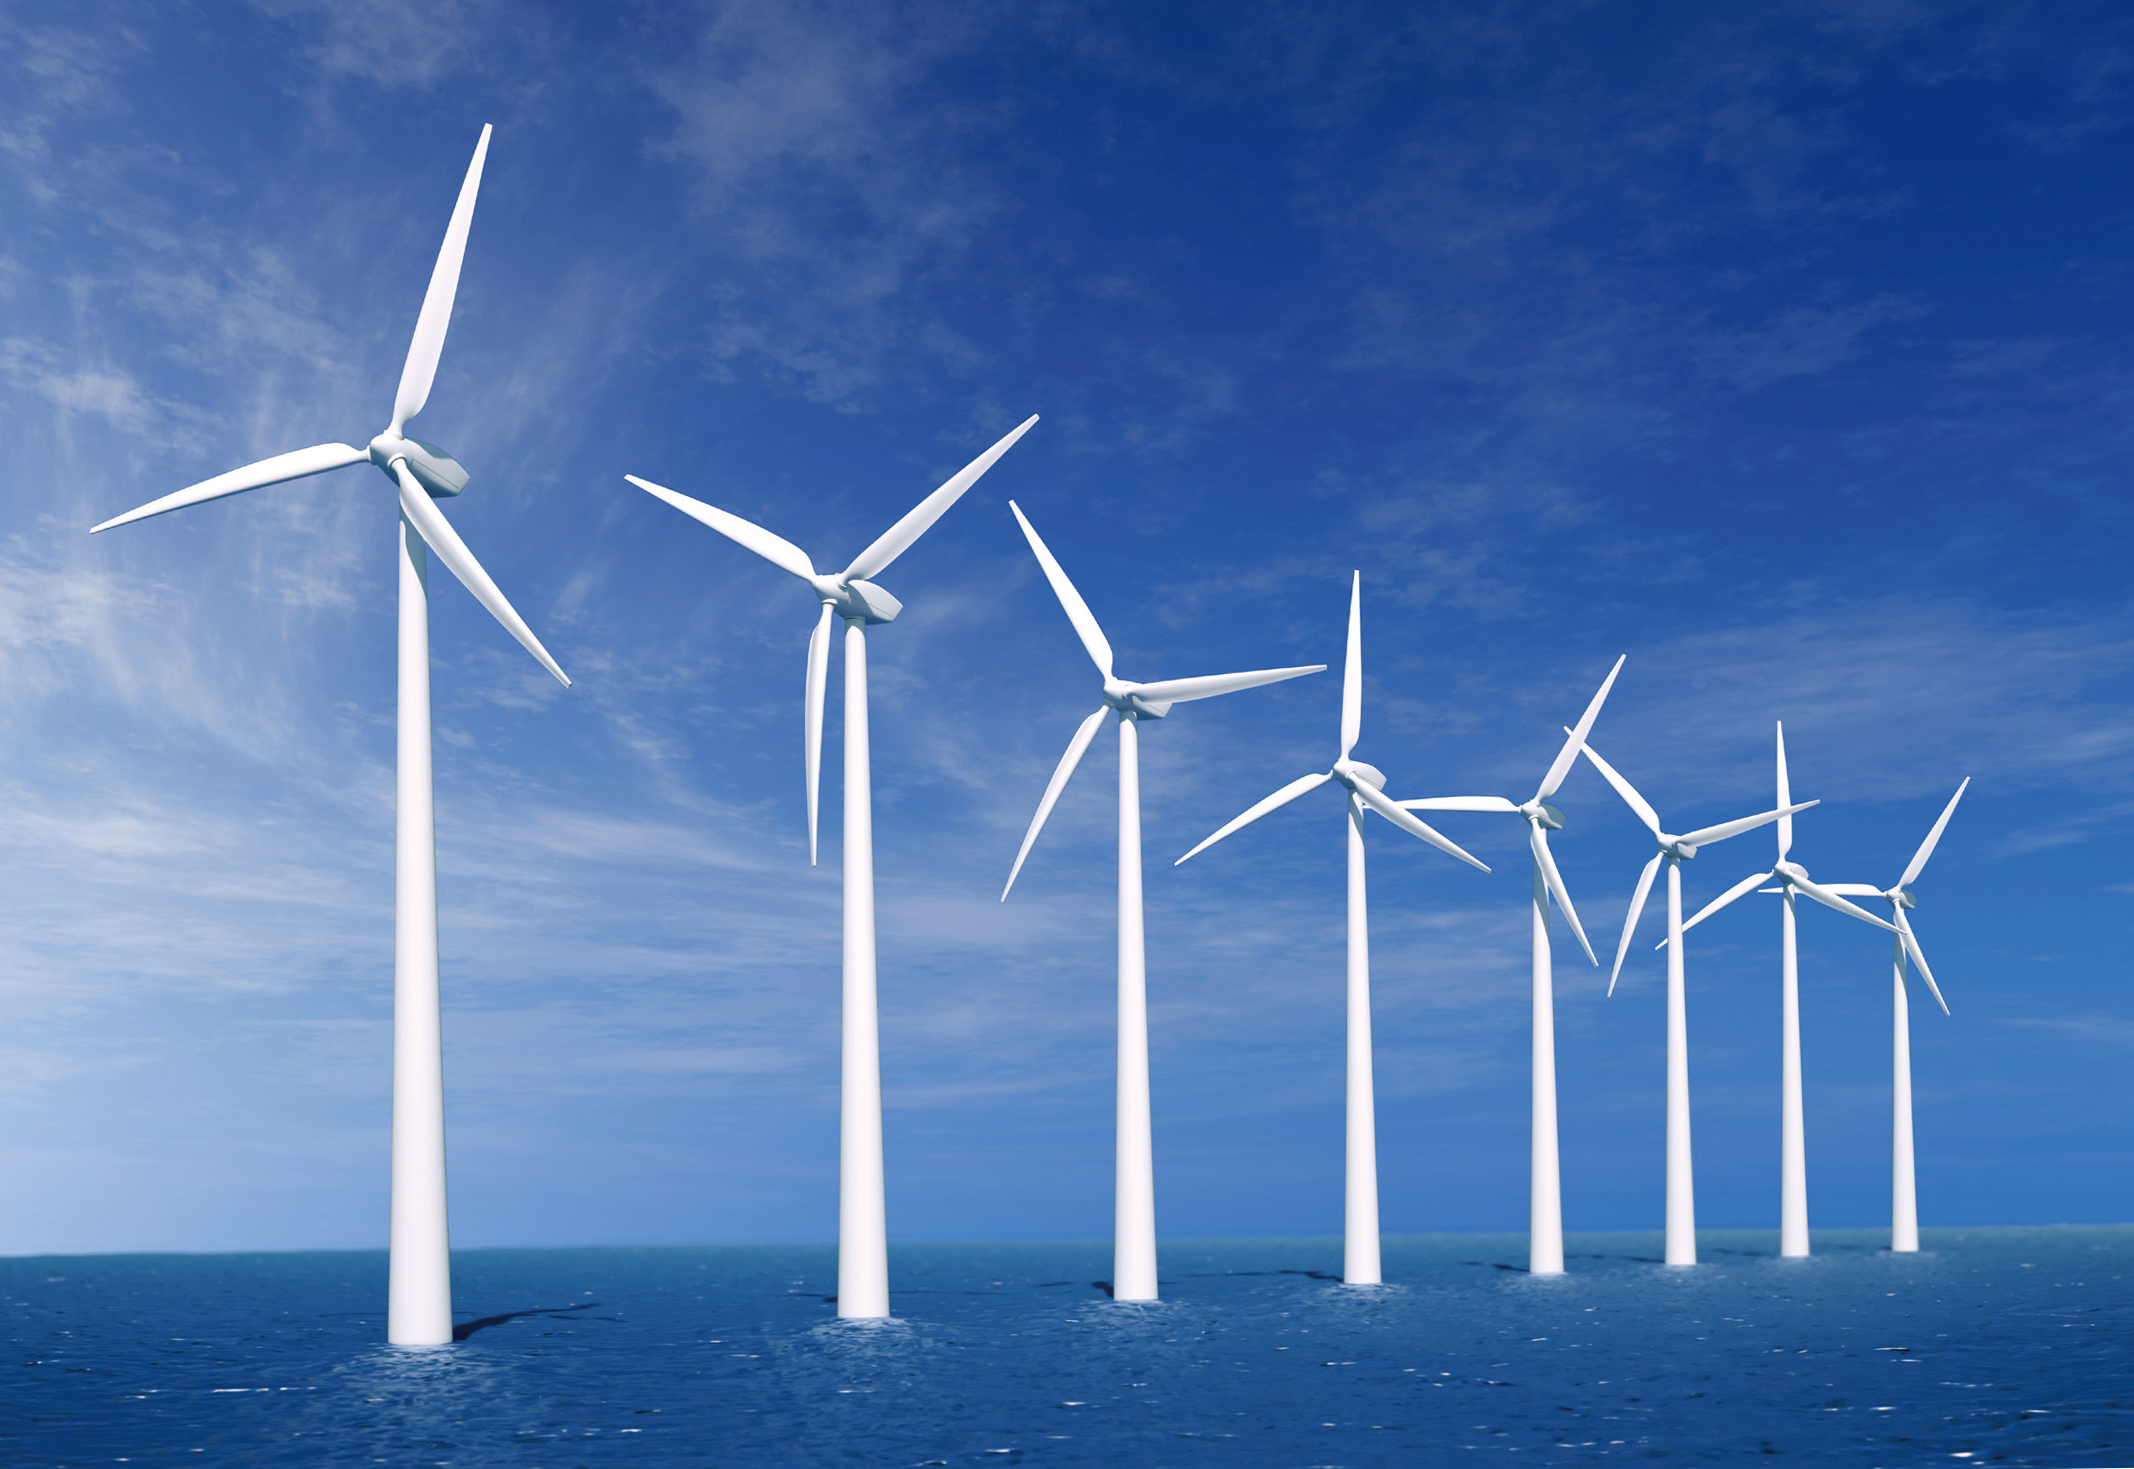 【预测】未来的海上风电将会如何发展？,中科国弘科技有限公司